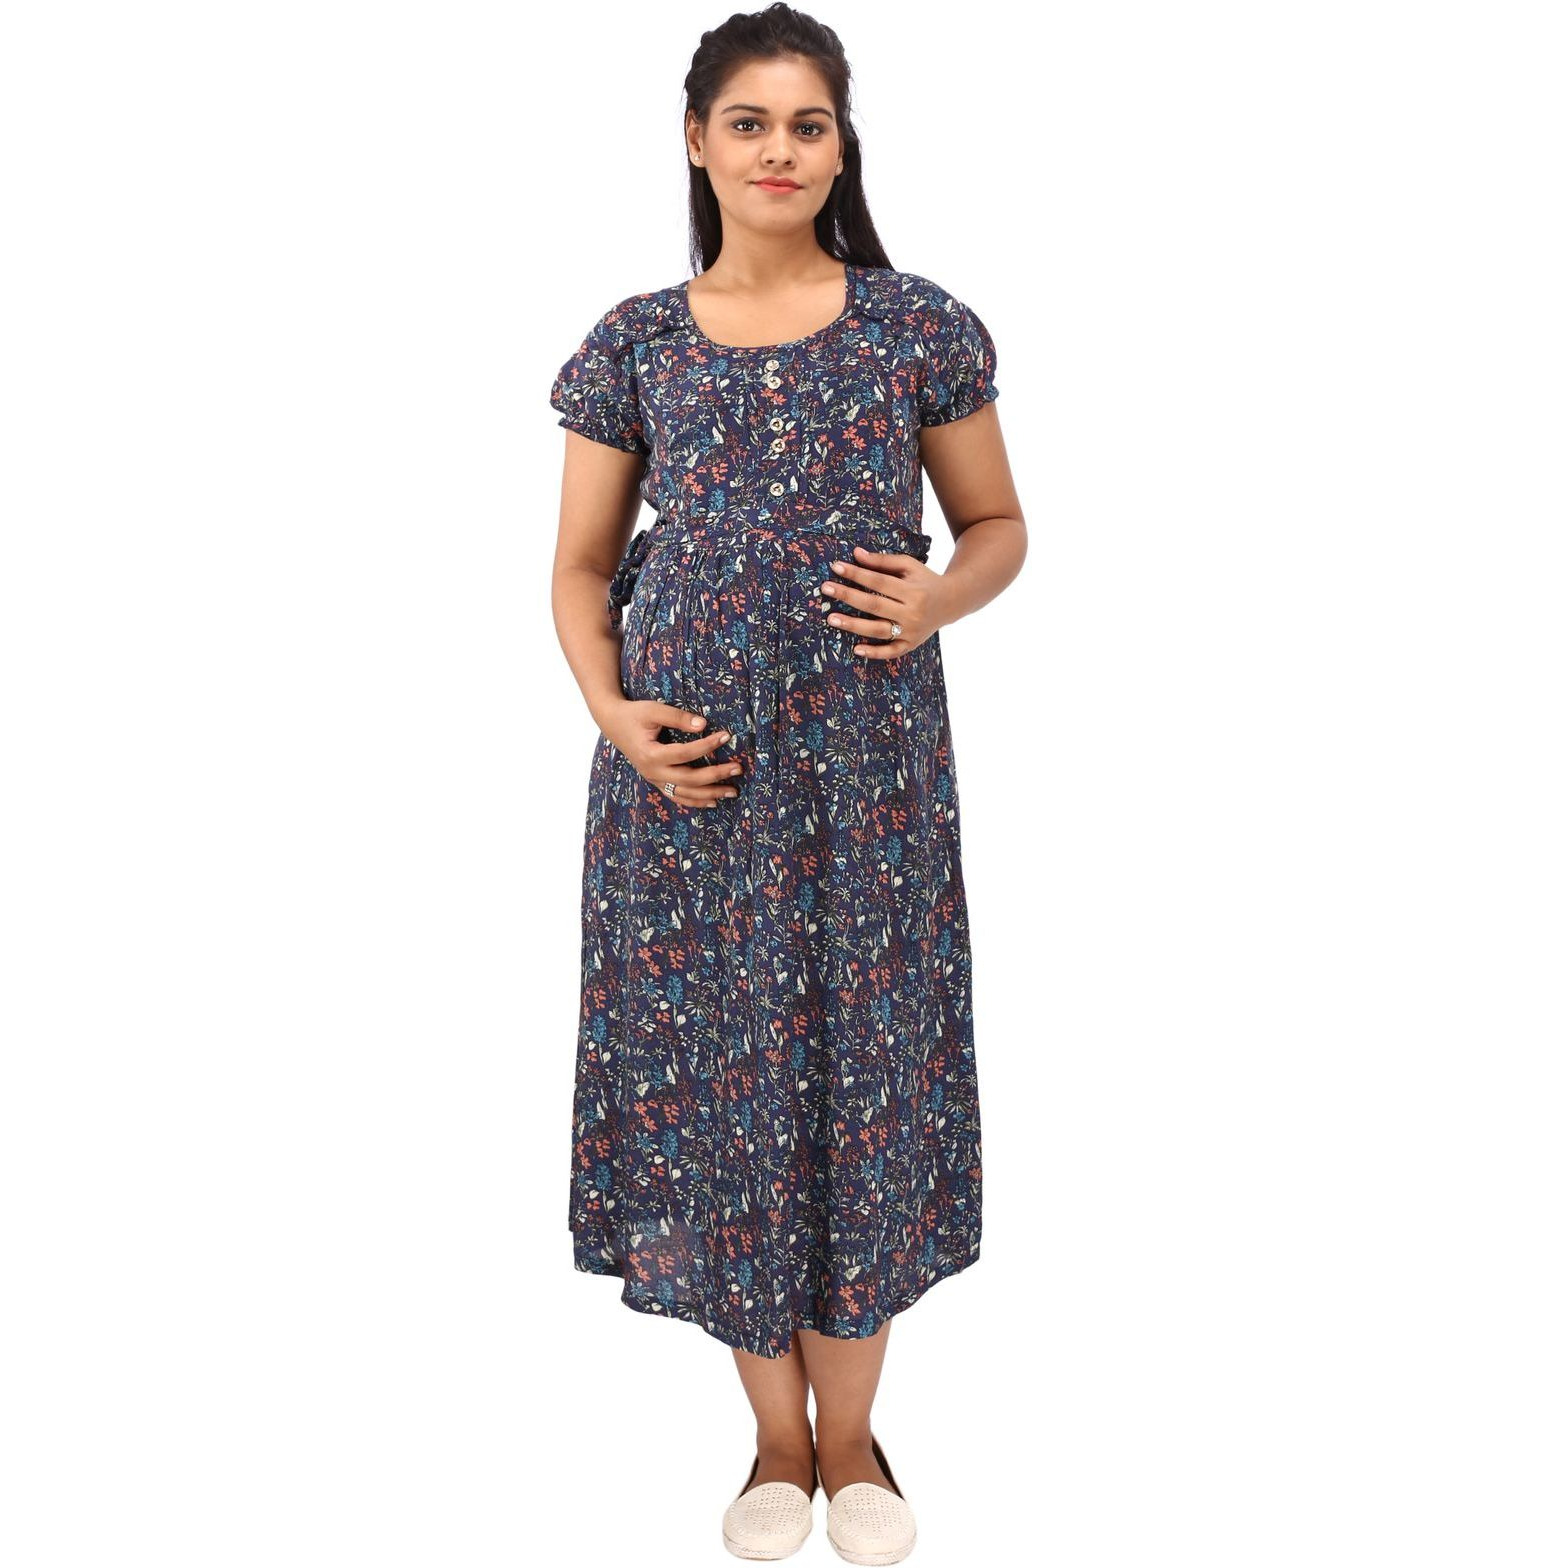 Mamma's Maternity Women's Rayon Printed Blue Maternity Dress (Size:XL)